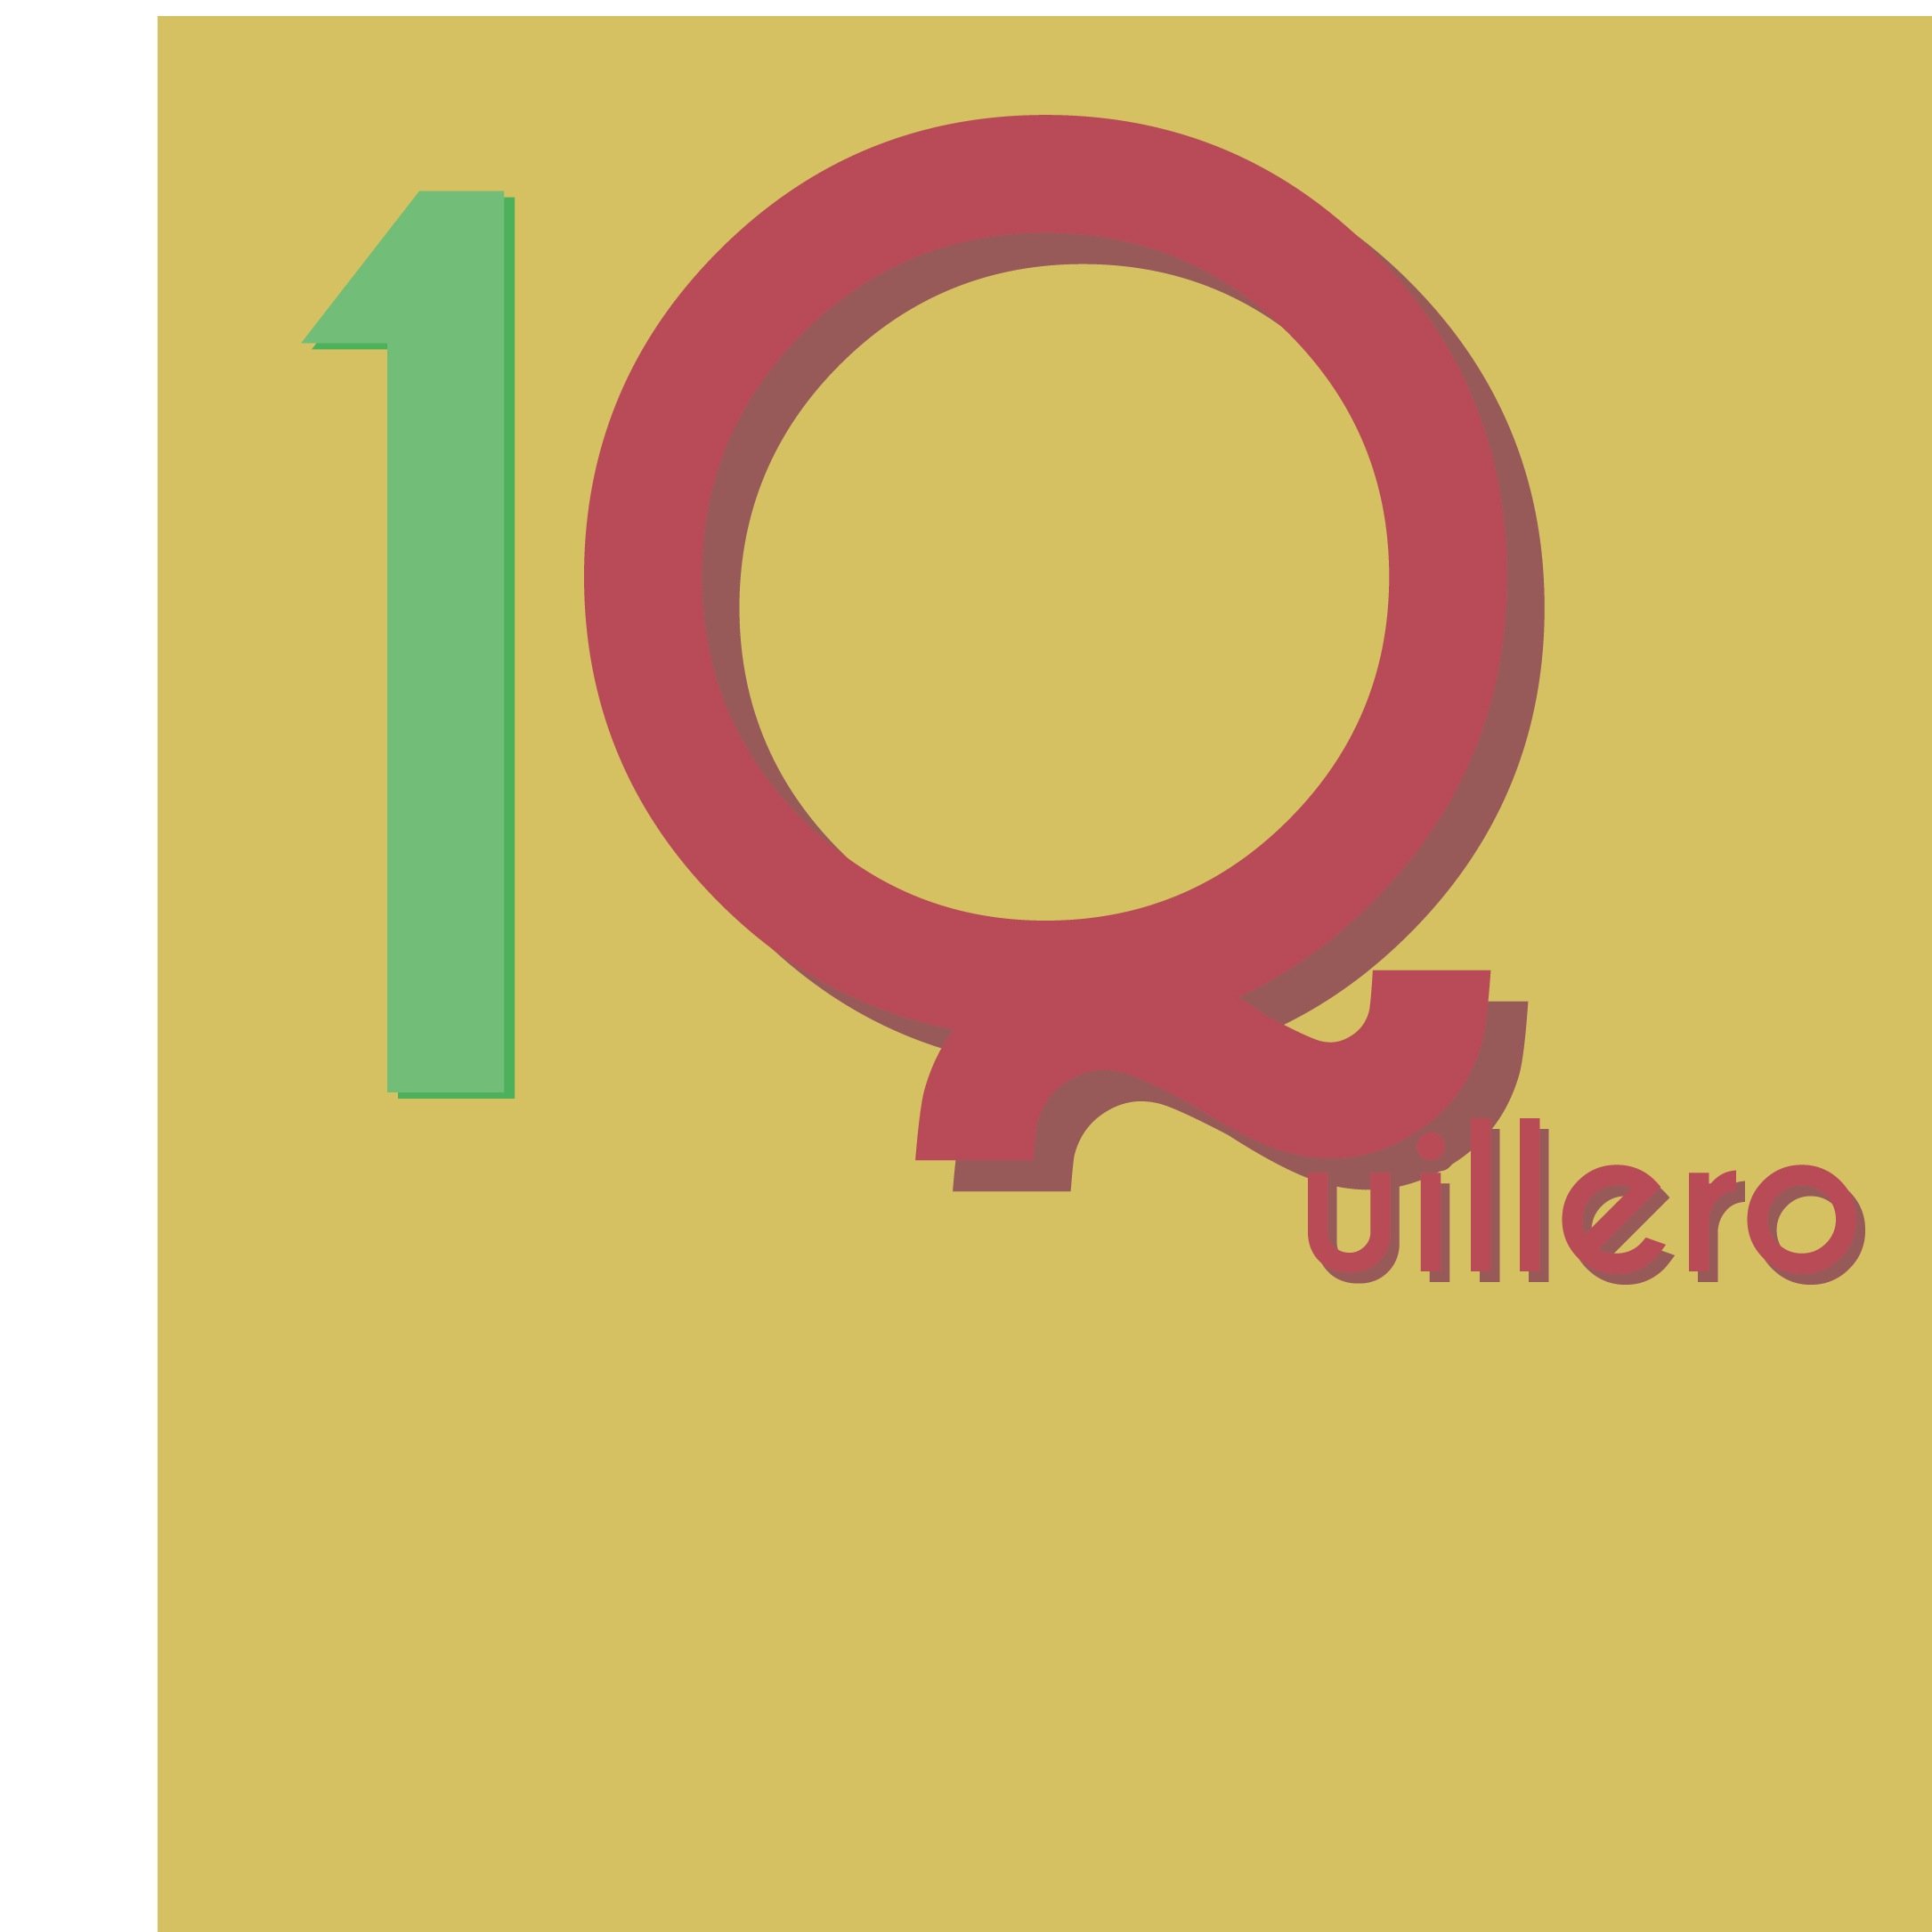 #SoyQuillero10 es una iniciativa barranquillera para construir ciudadanía. Juntos por un mejor uso de @transmetrobaq.